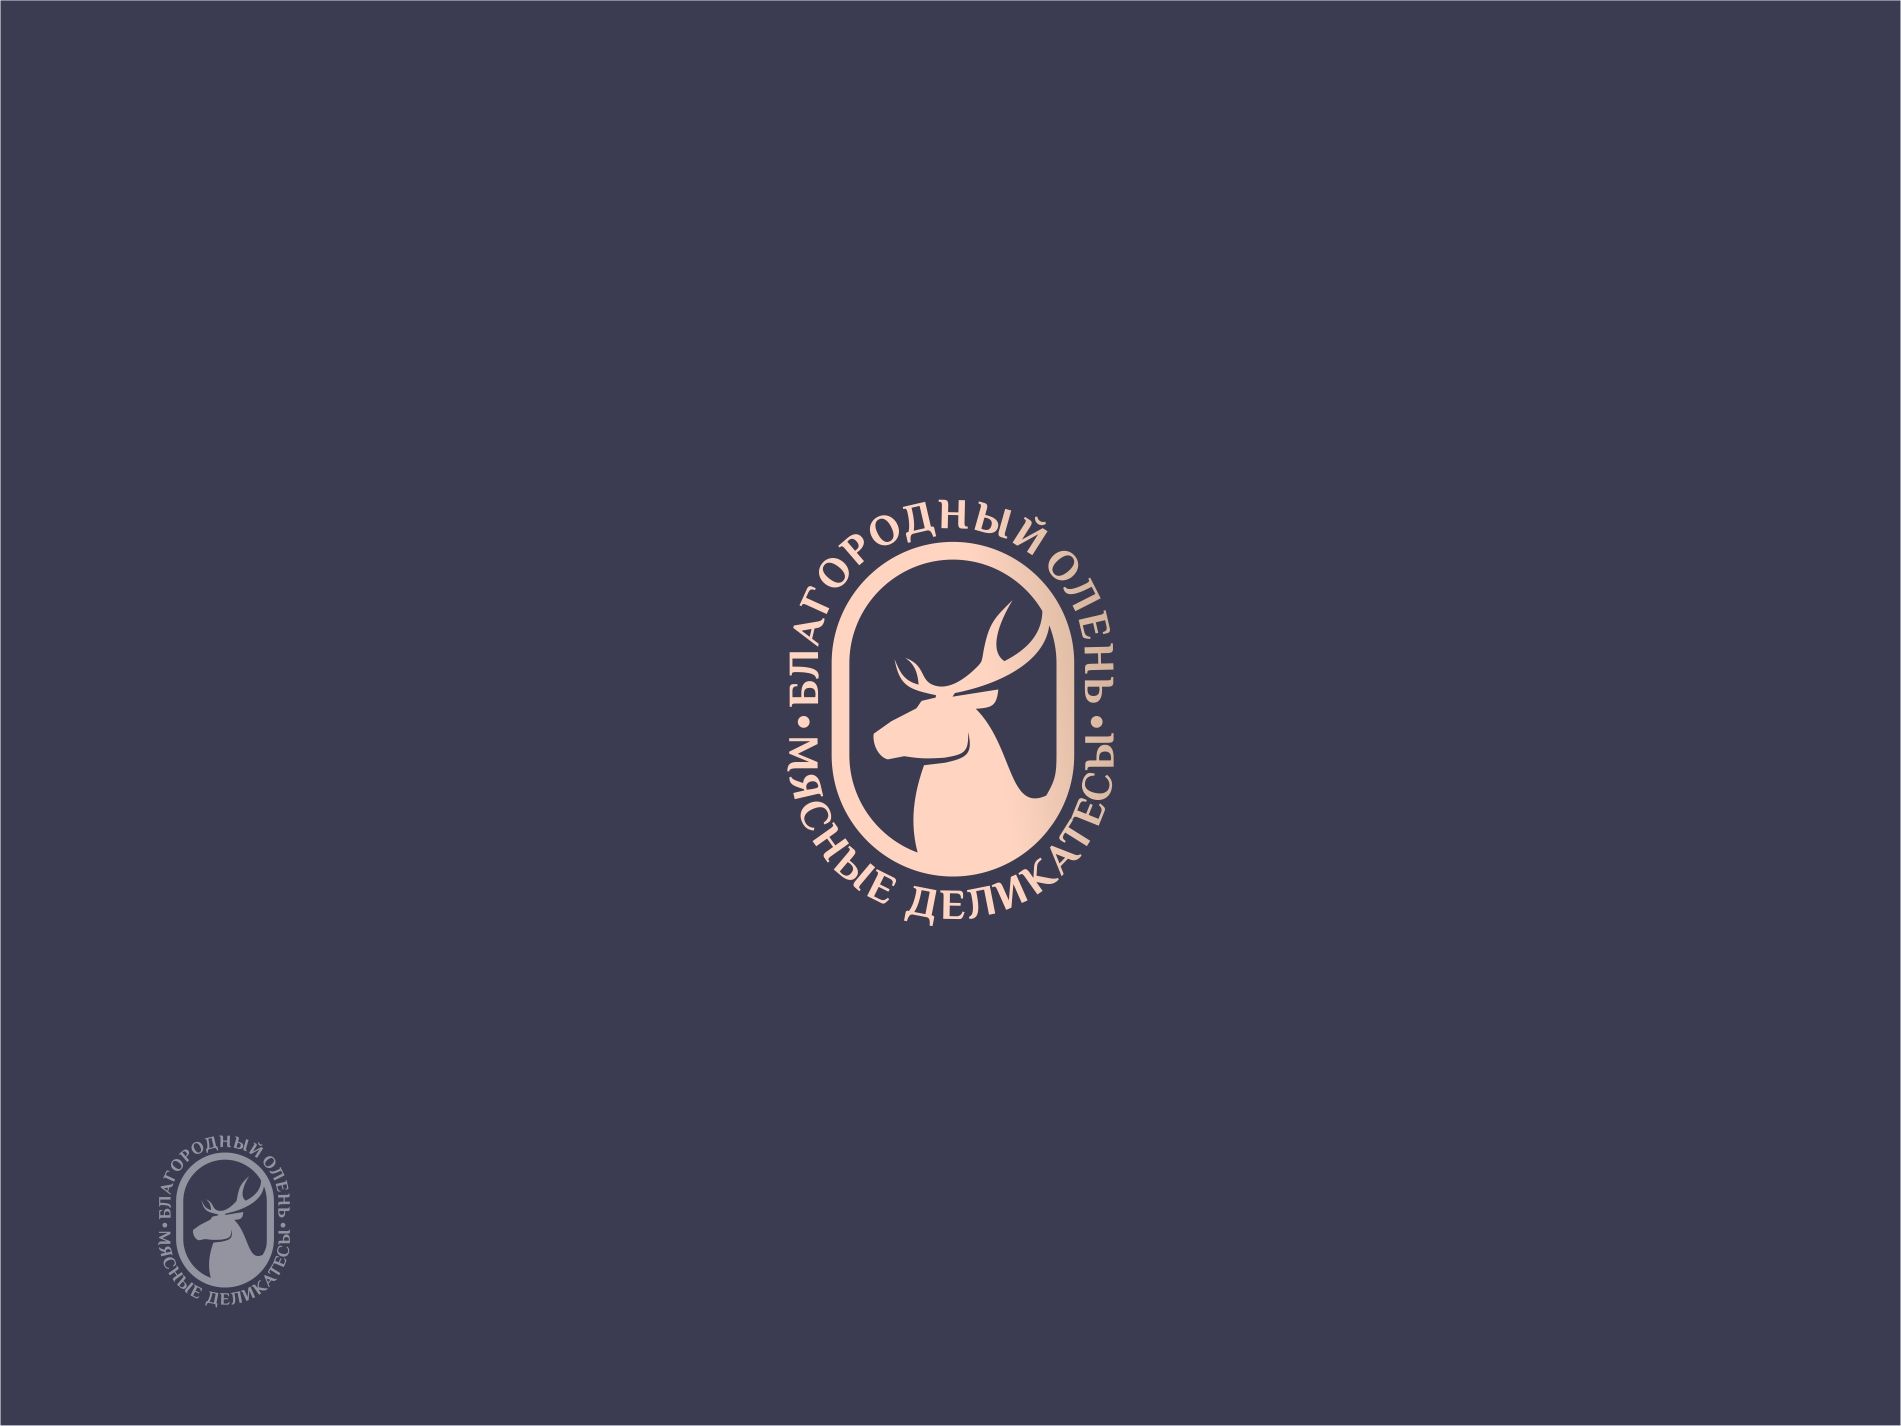 Логотип для Благородный олень - дизайнер ms_galleya